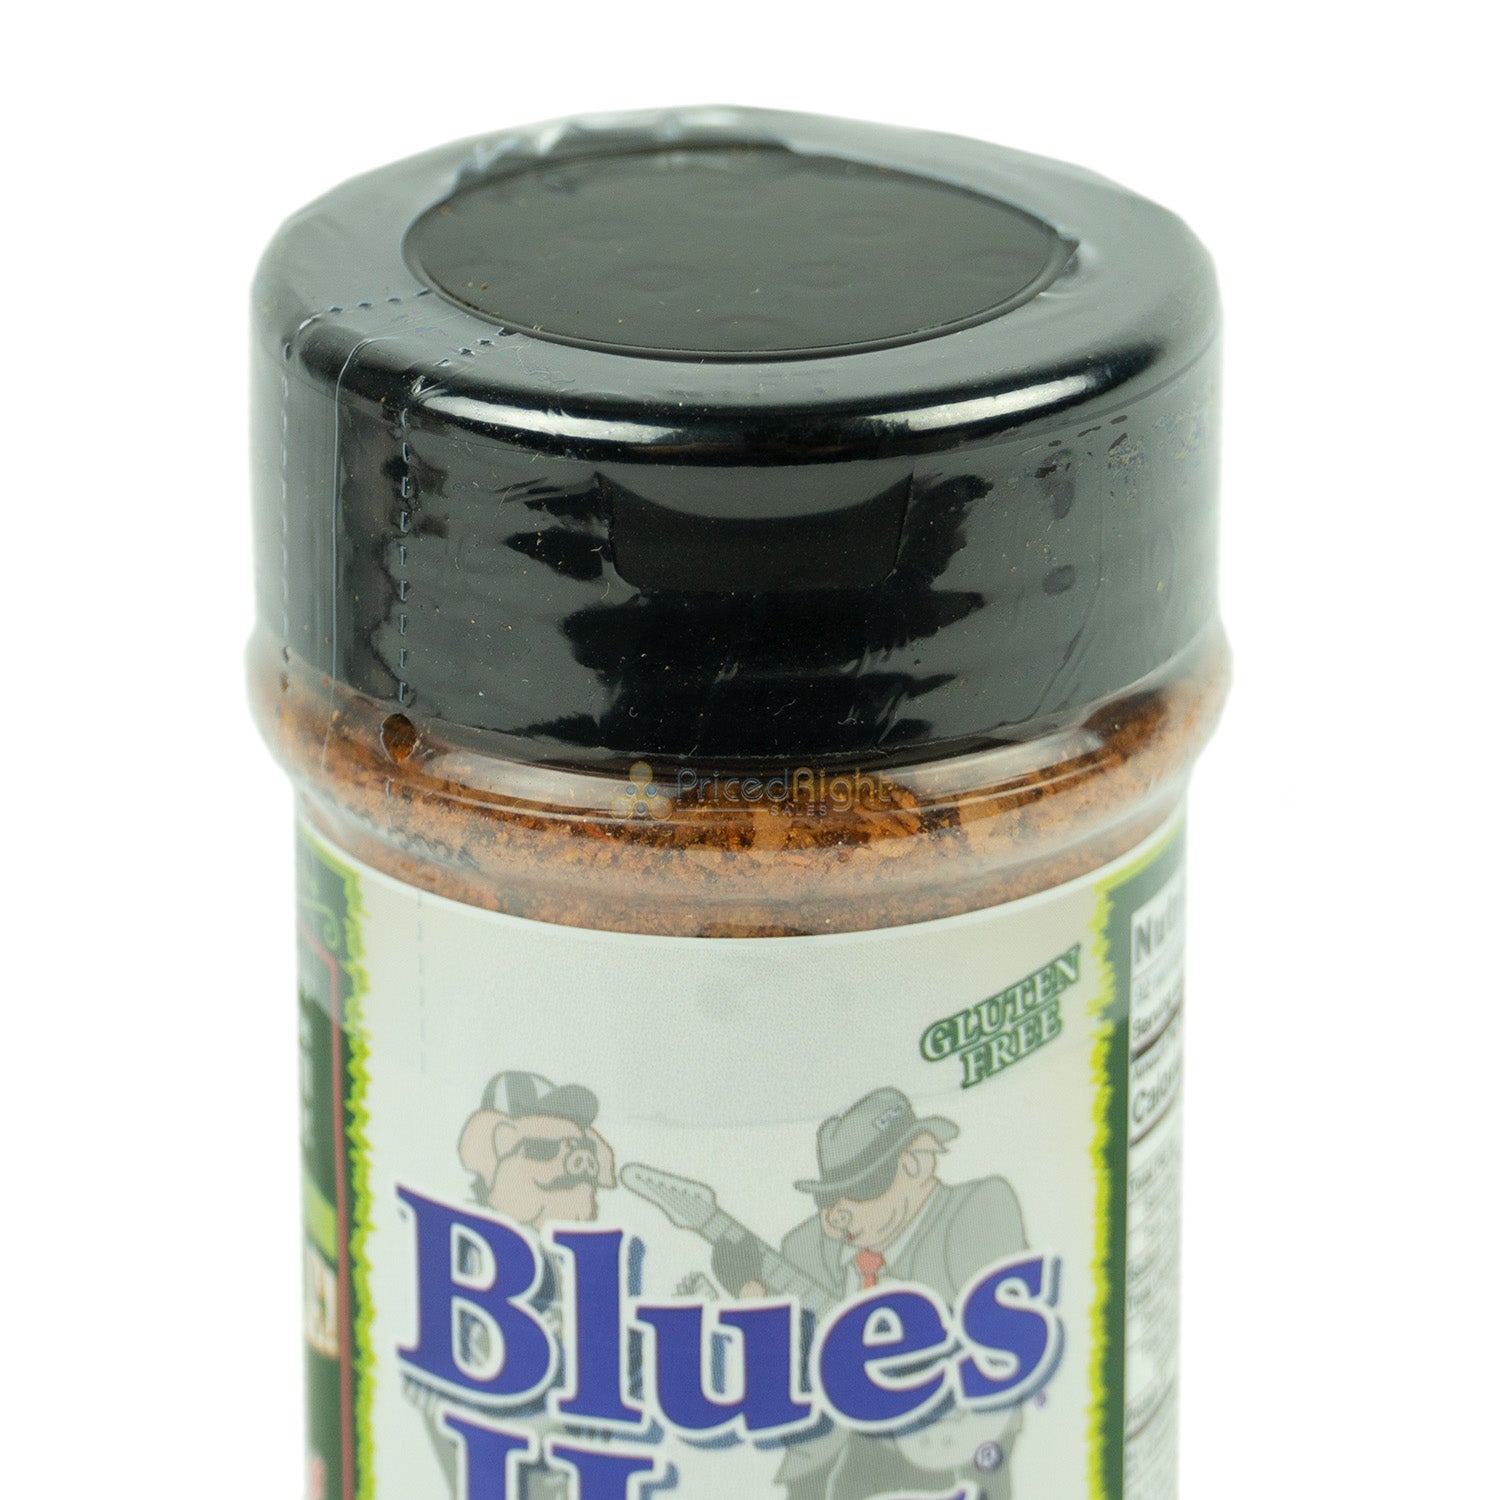 Blues Hog Dry Rub Ritas & Fajitas All-Purpose Seasoning All-Natural 6.5 Ounces